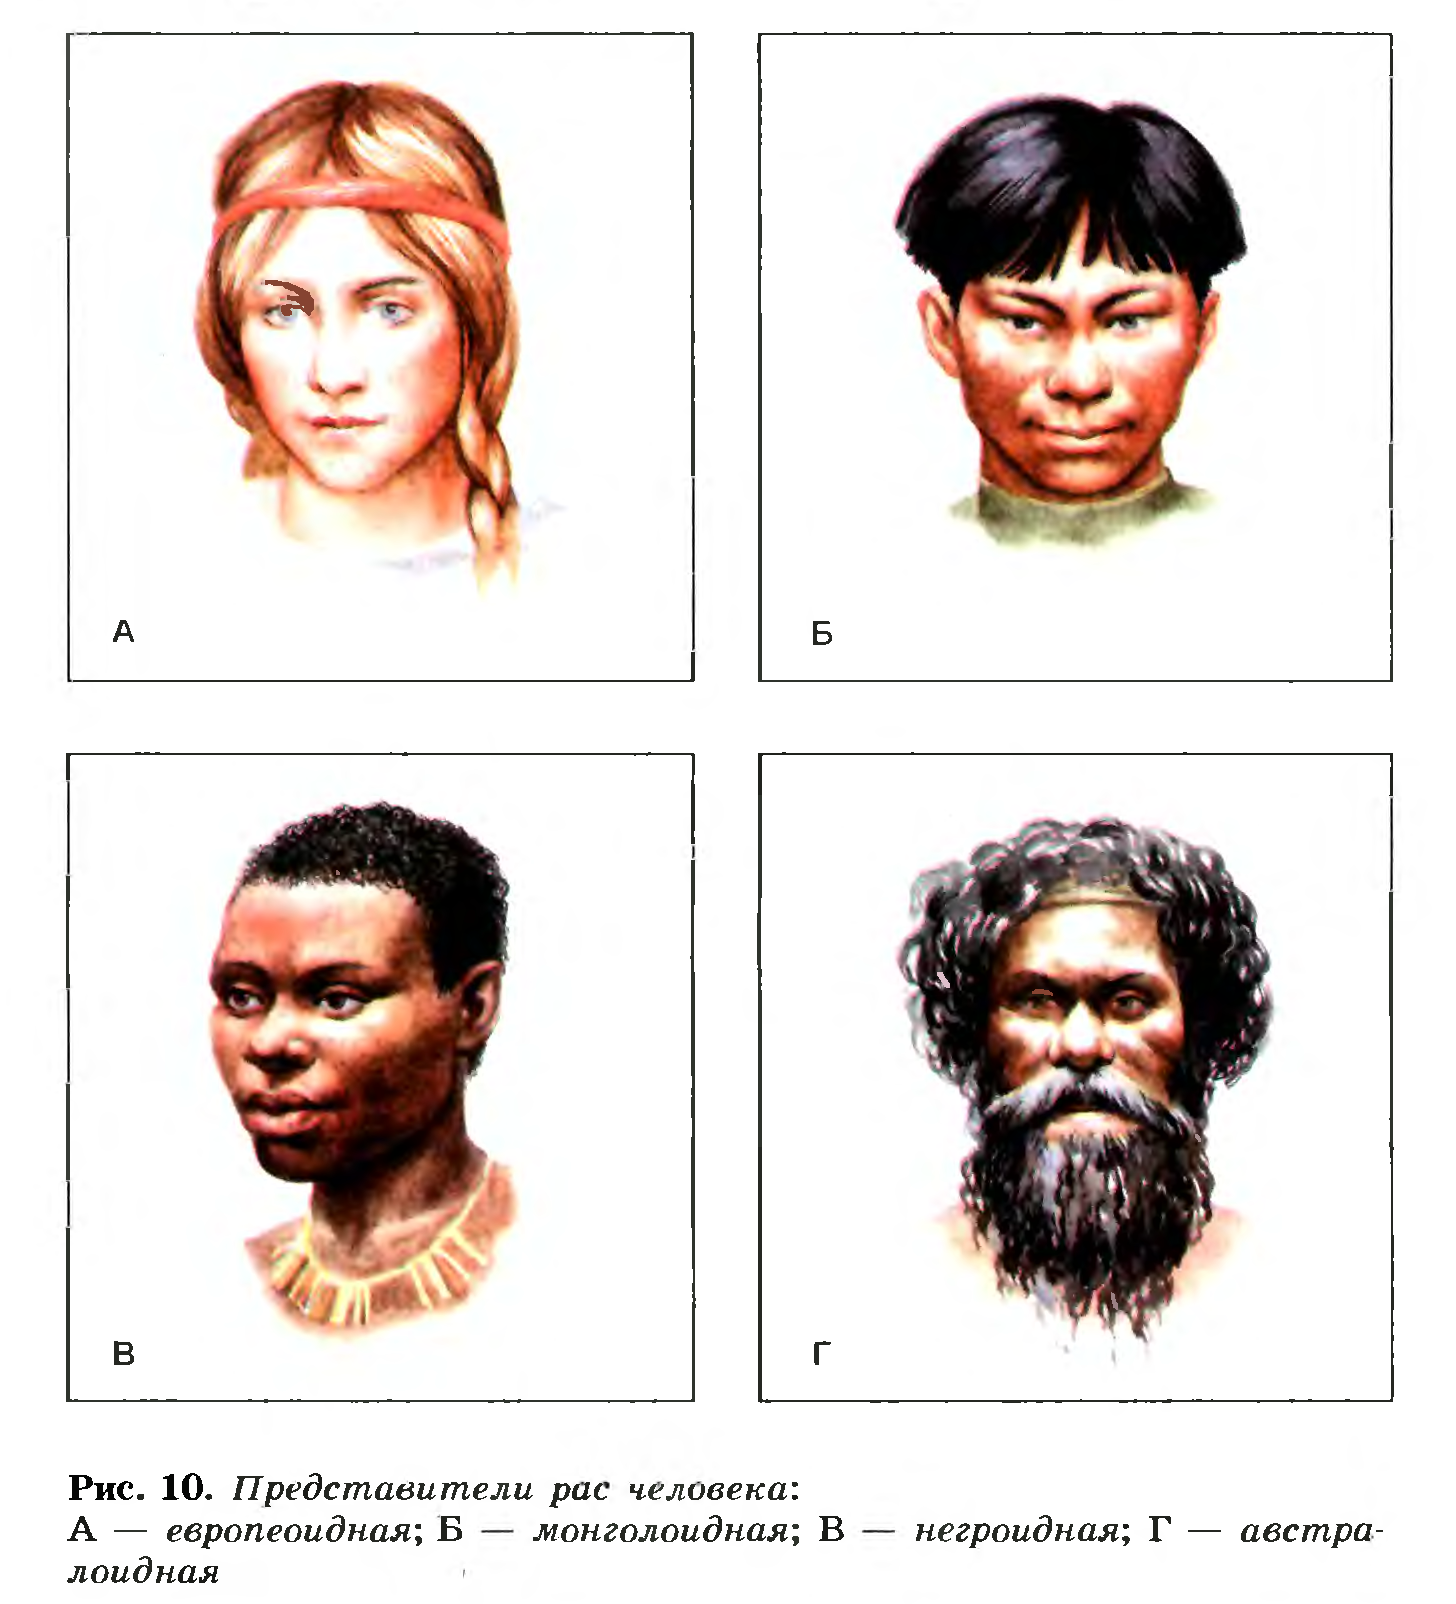 Примеры выдающихся людей разных рас. Люди европеоидной и монголоидной расы. Негроидная и монголоидная раса. 4 Расы людей европеоидная монголоидная негроидная и. 4 Расы людей на земле.